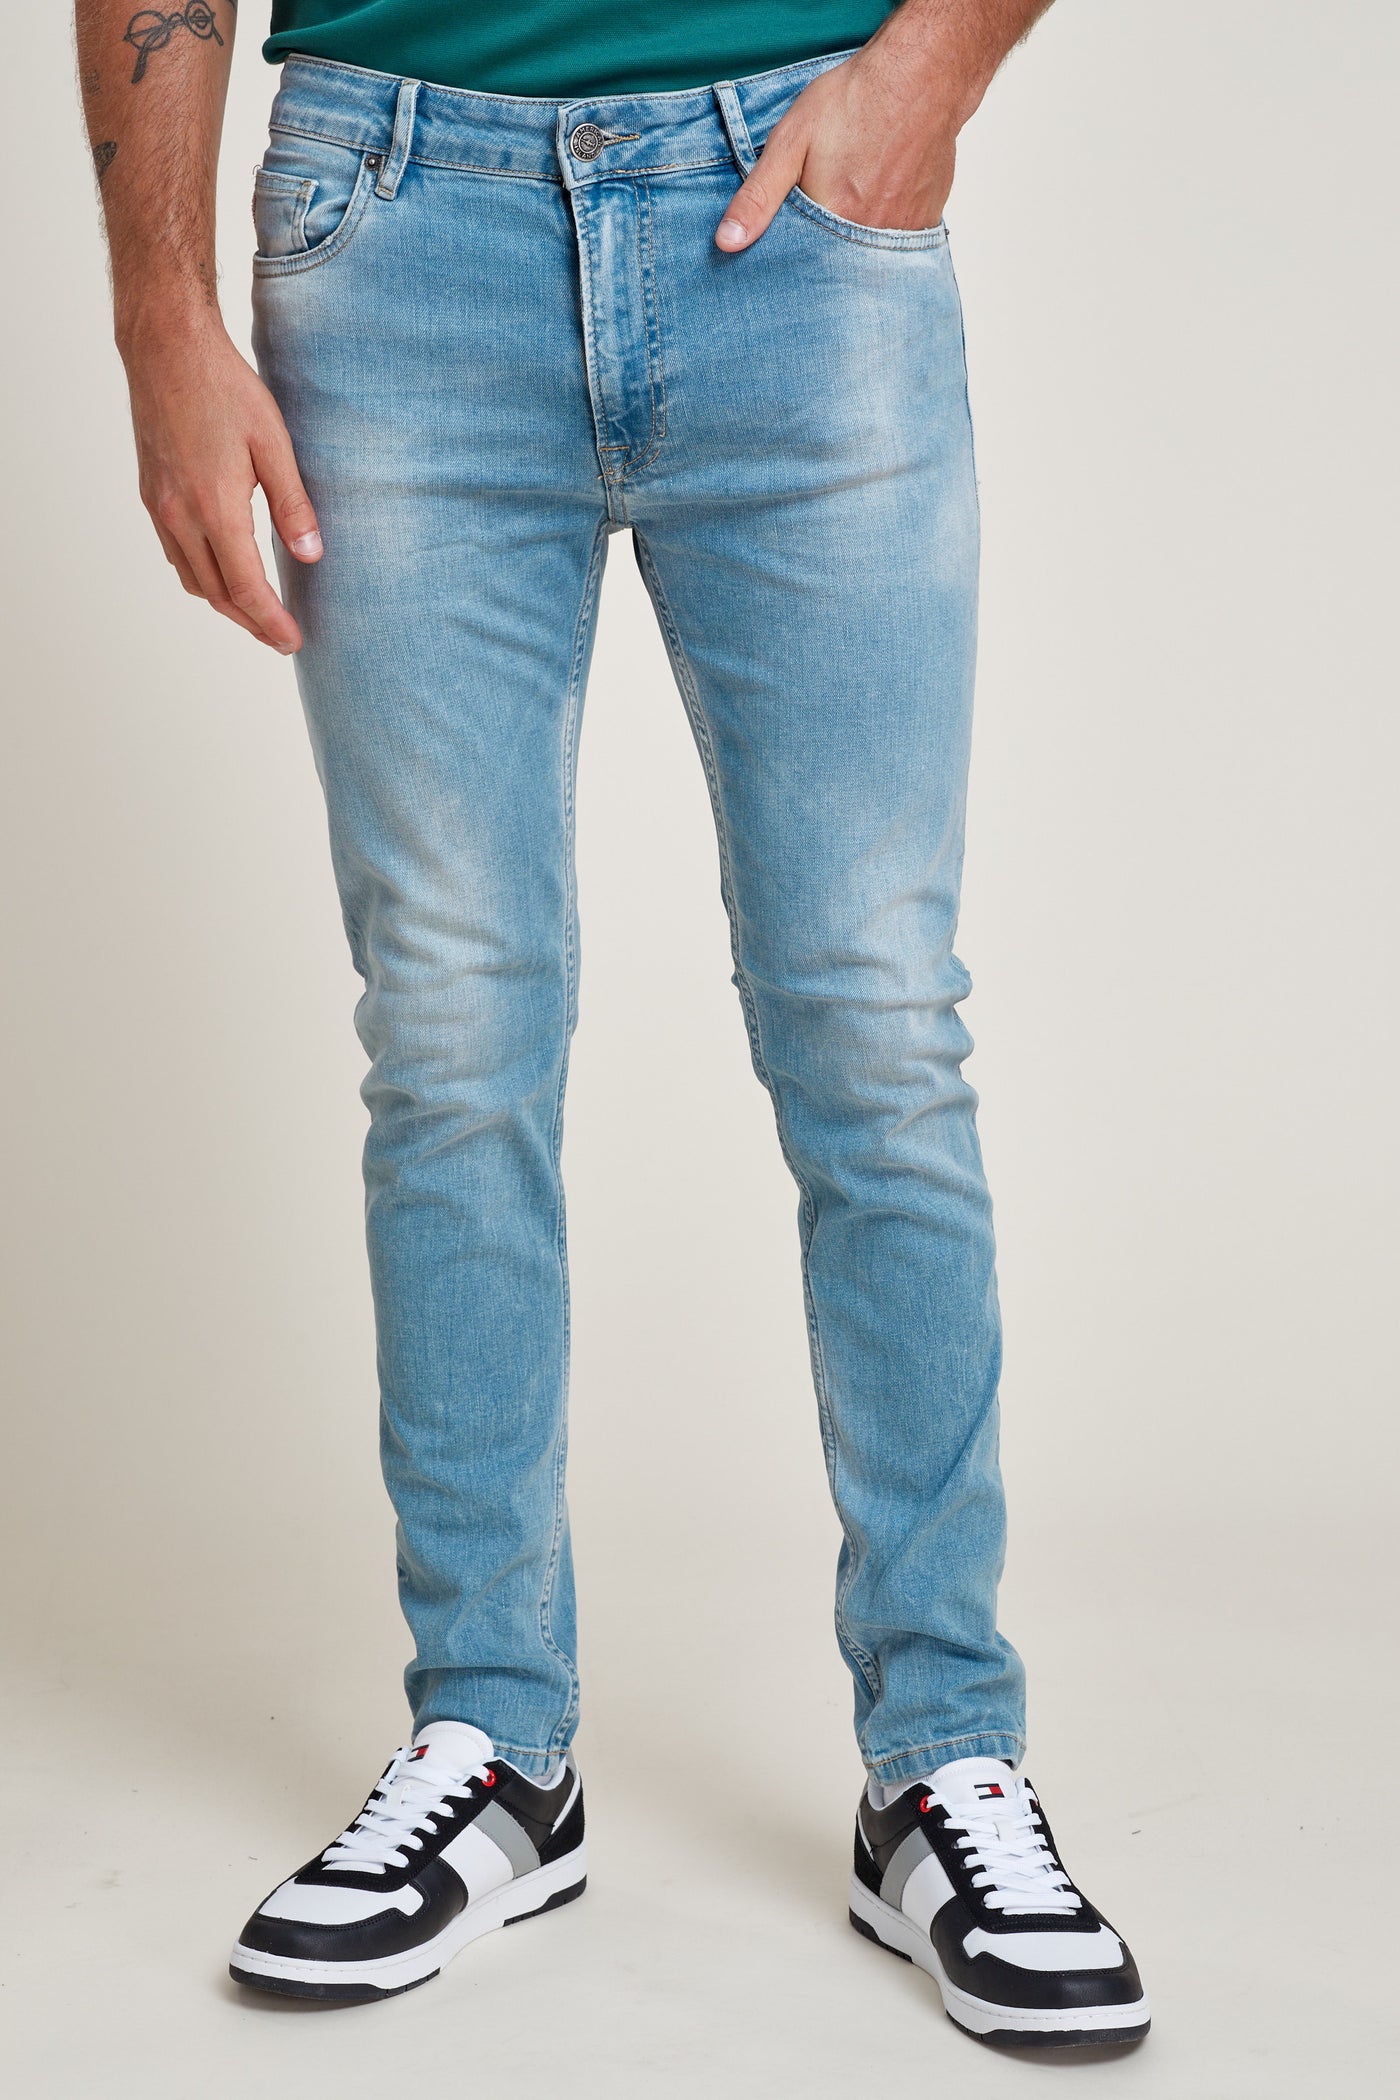 מכנס ג'ינס סקיני בצבע כחול 24